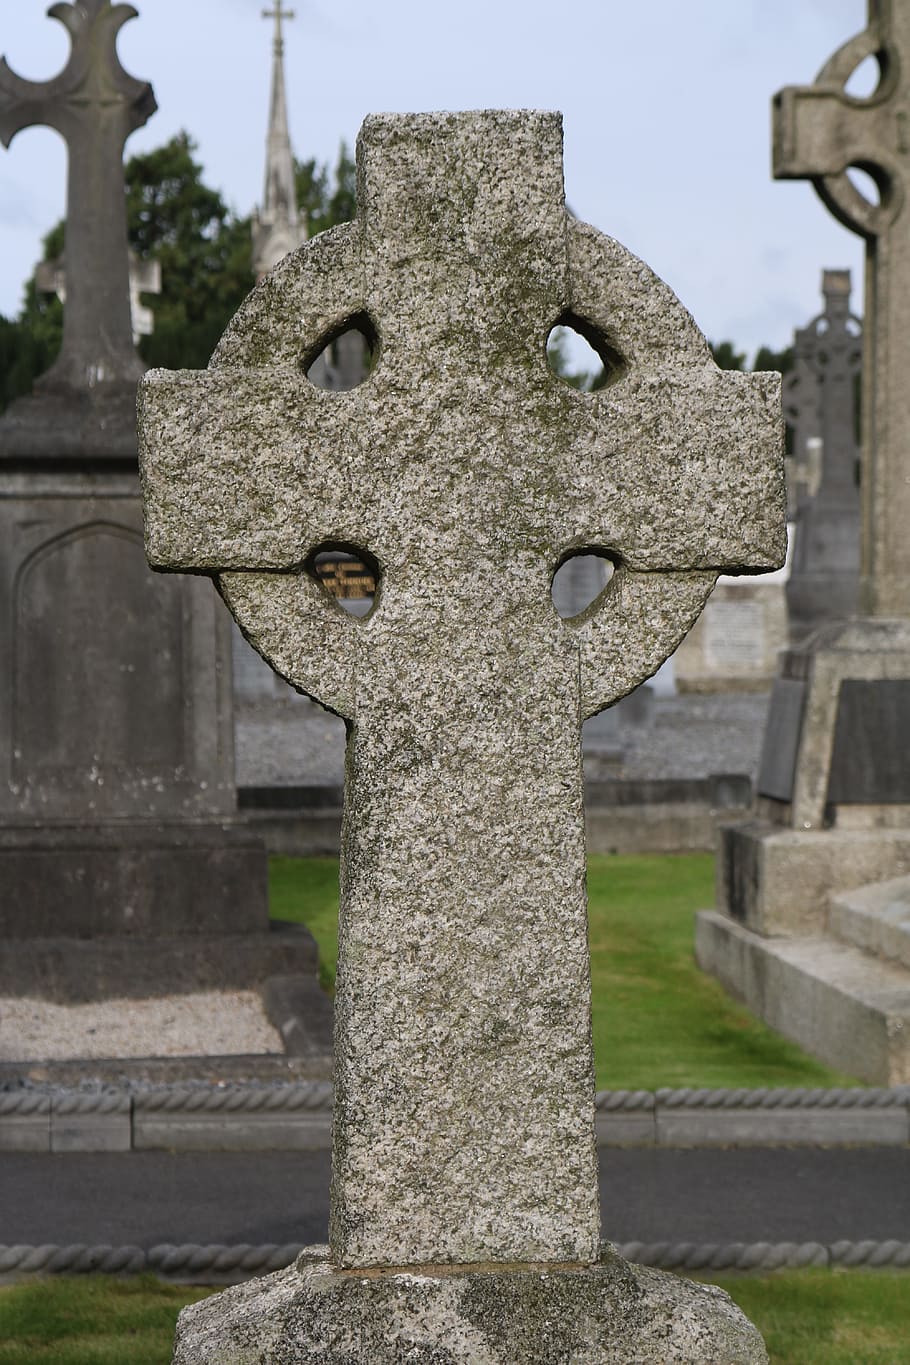 glasnevin, dublín, irlanda, cementerio, lápida sepulcral, celta, funeral, un lugar para descansar, tumbas, antiguo cementerio